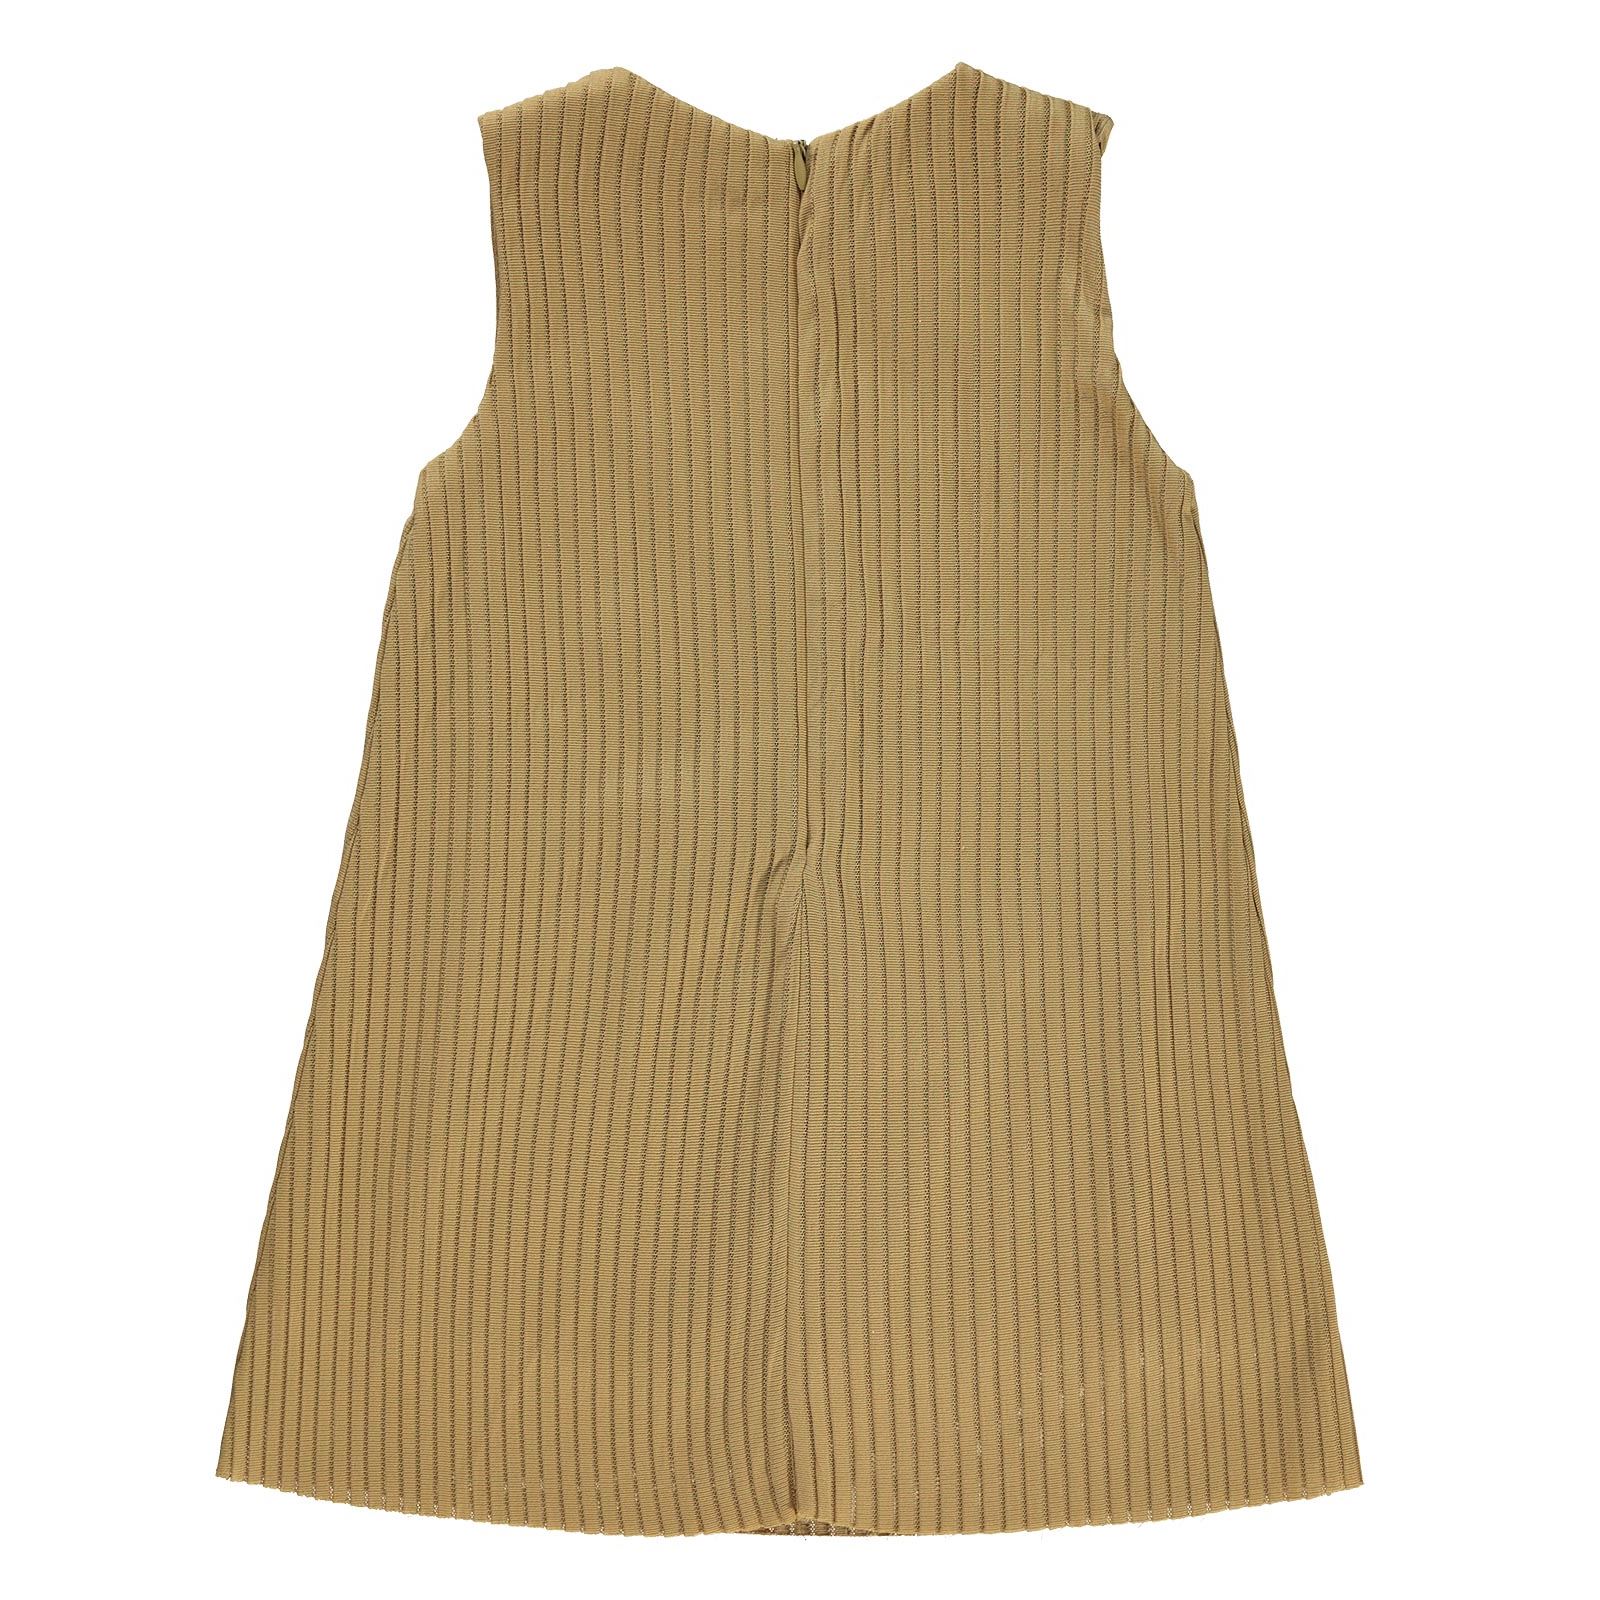 Wecan Kız Çocuk Çantalı Elbise 2-5 Yaş Kahverengi